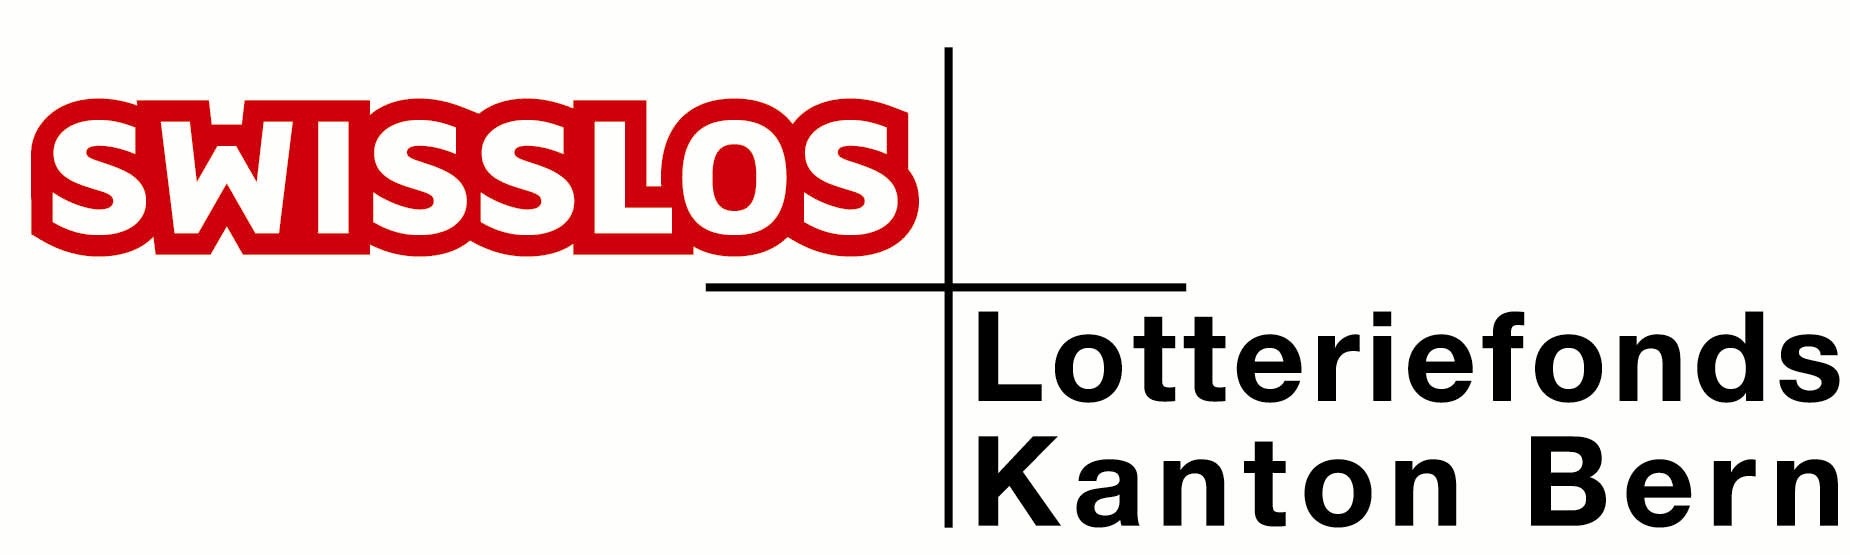 Logo Lotteriefonds farbig (jpg)